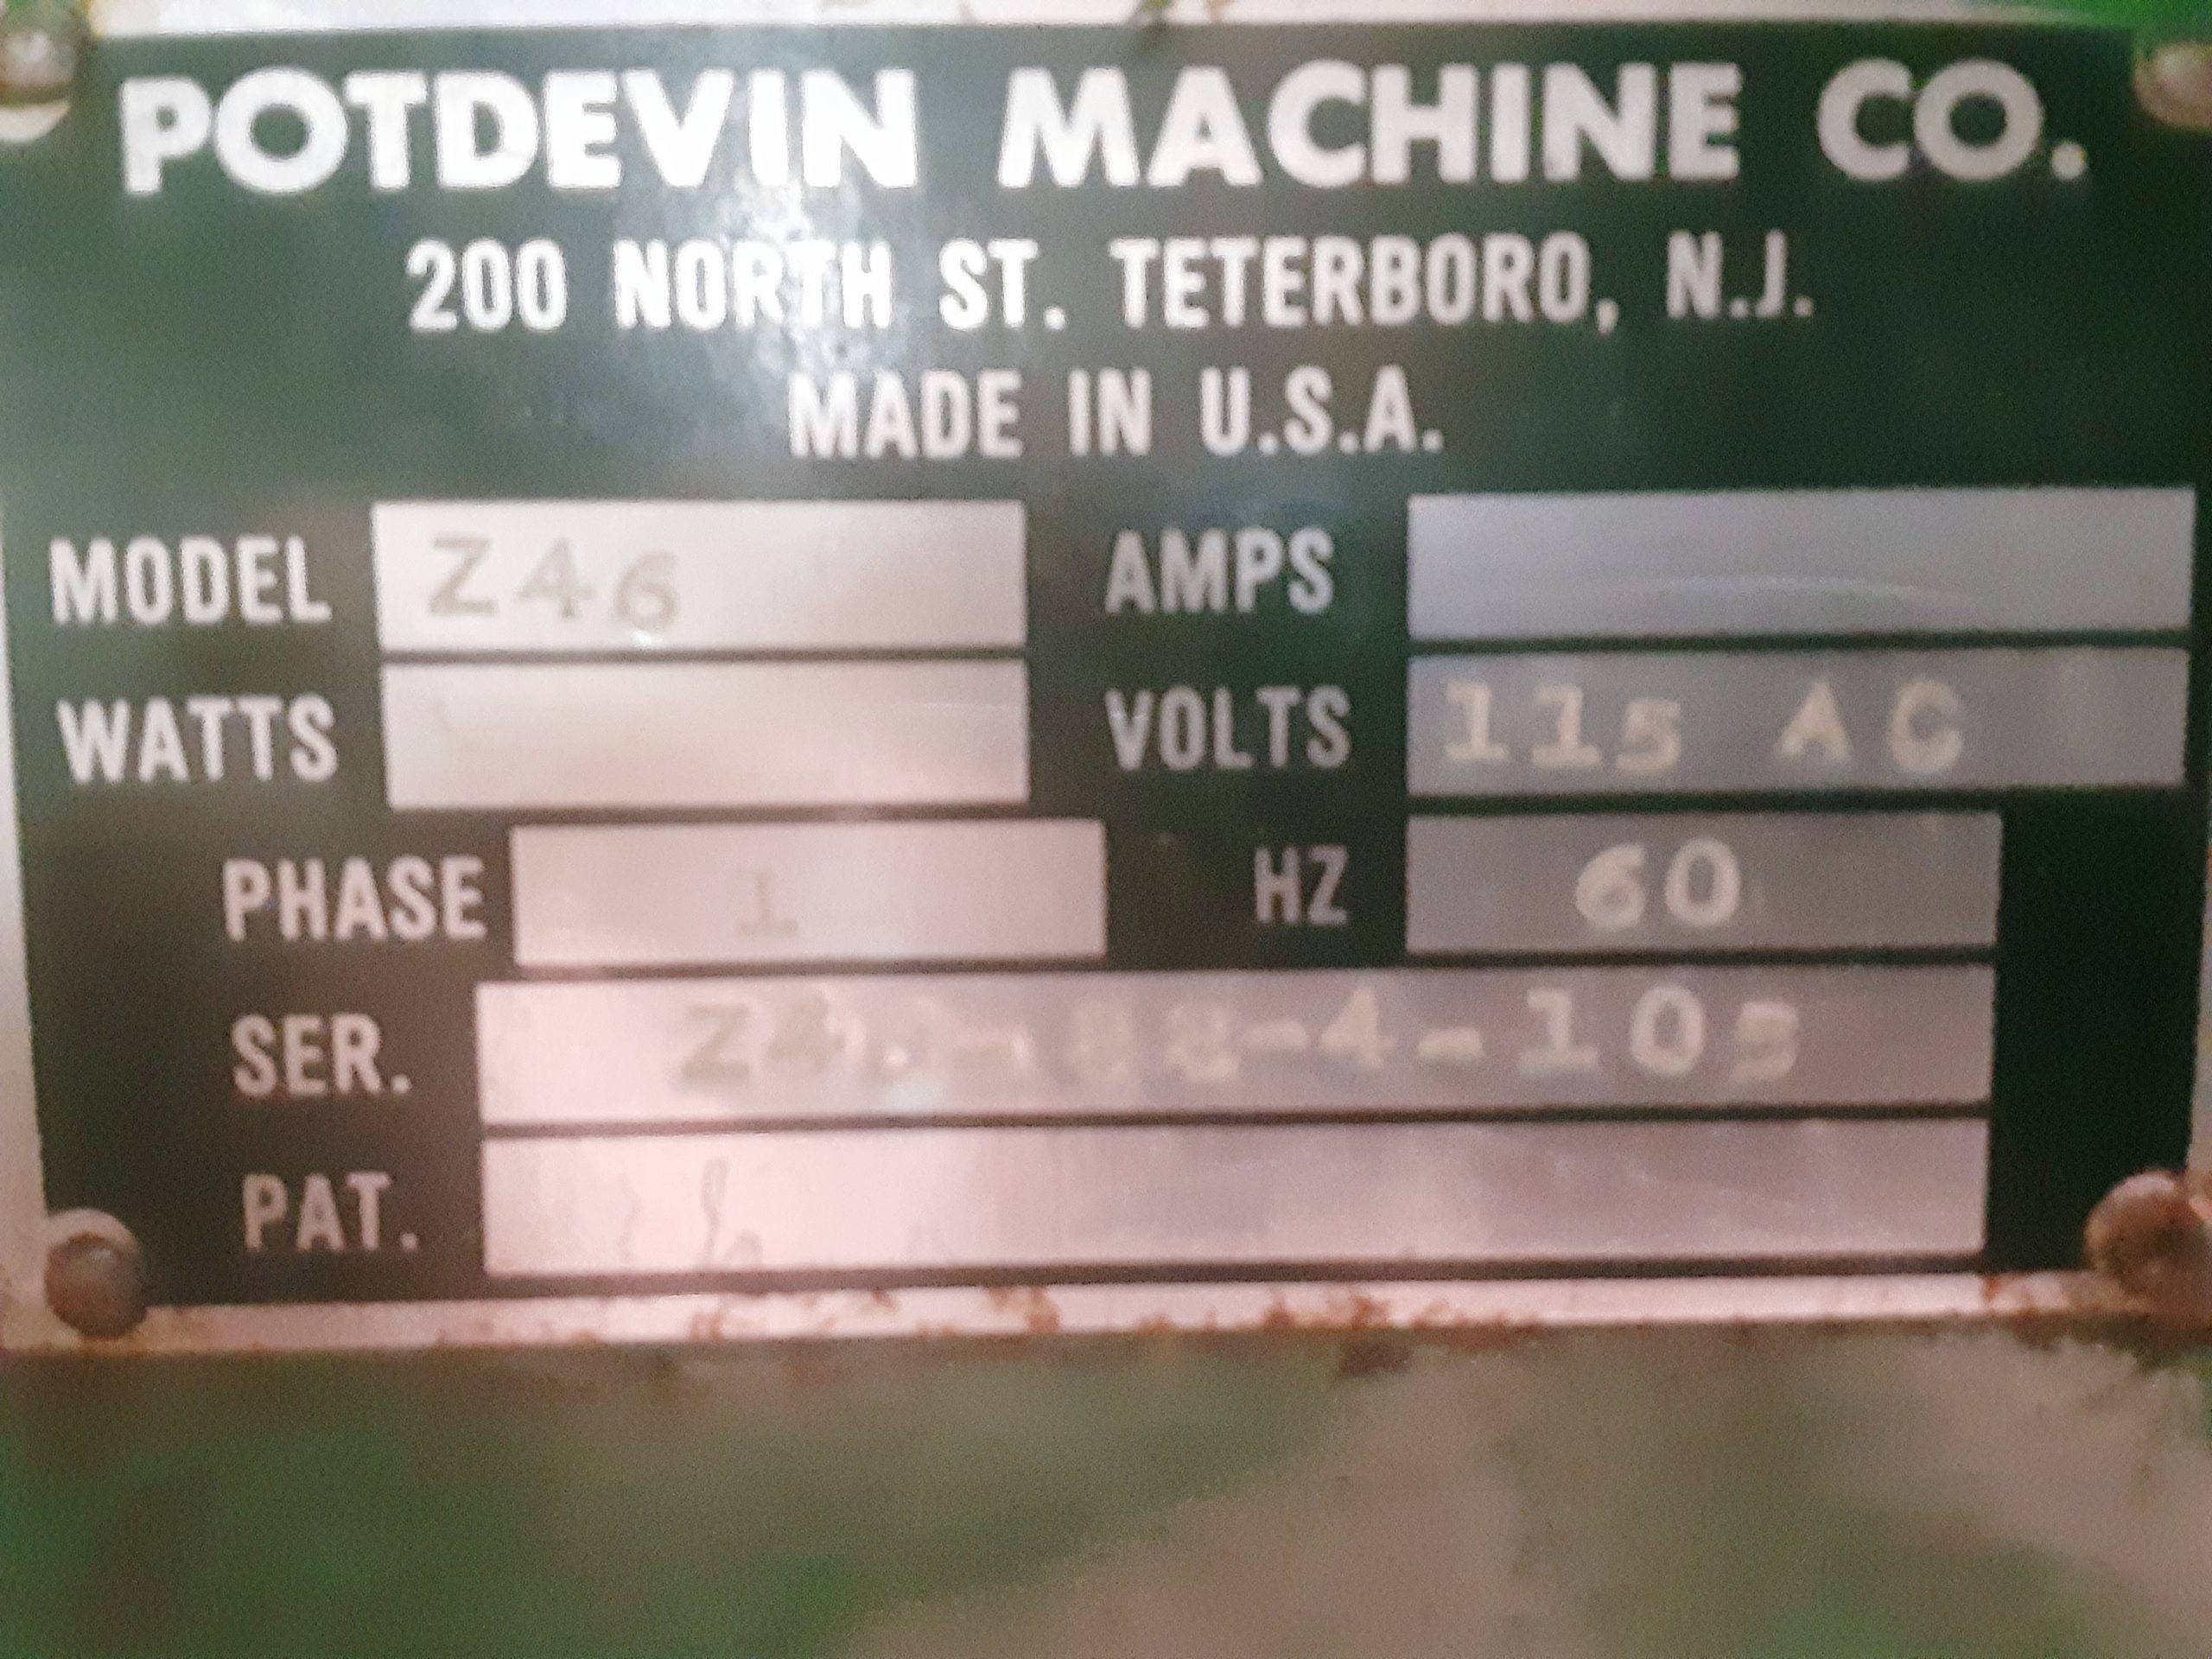 Potdevin Z46 Cold Gluer (used) Item # UE-061522A (Iowa)